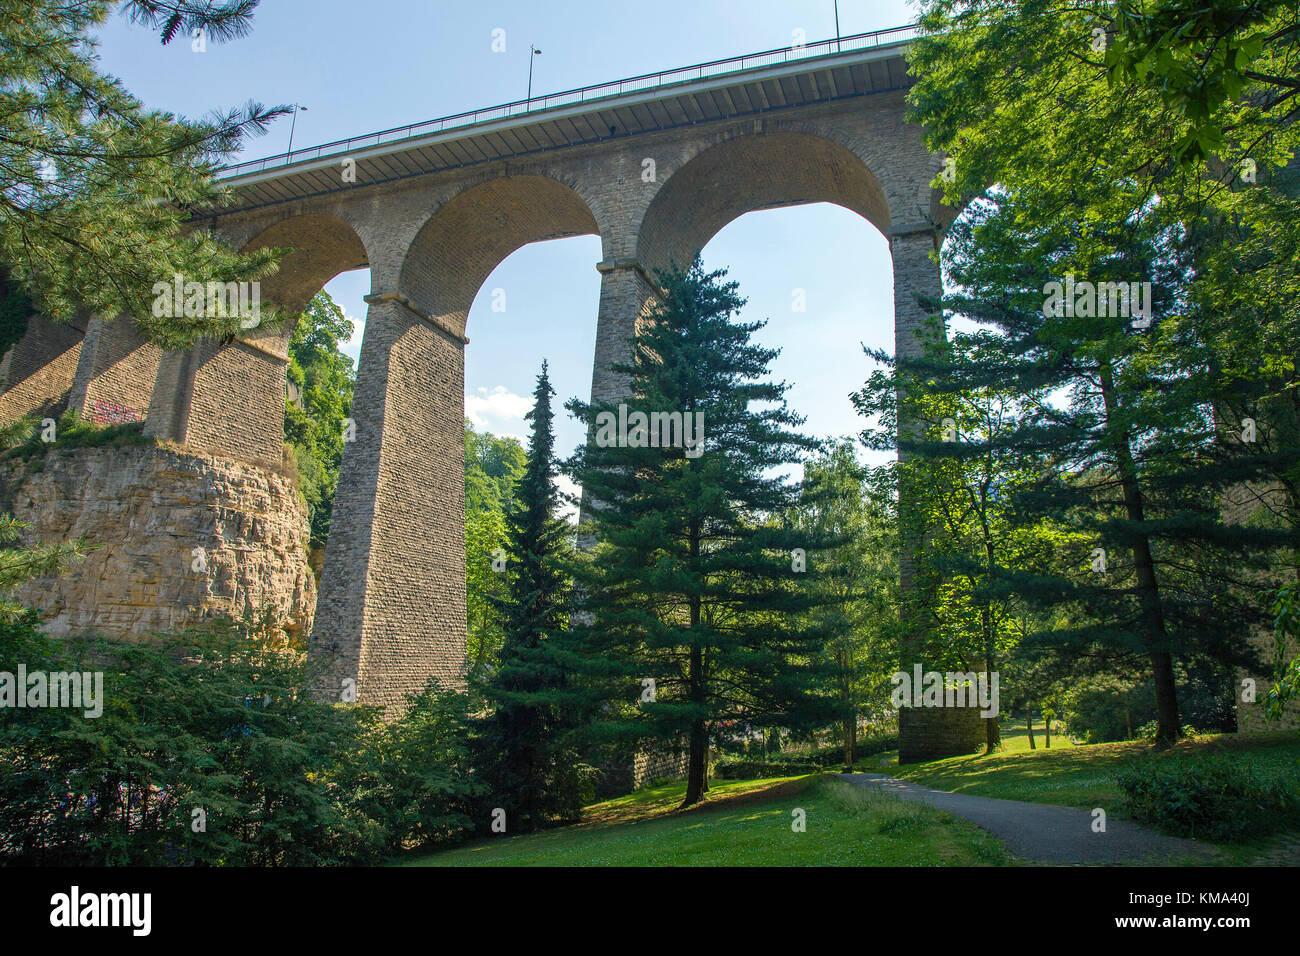 Viaducto, también conocido como pasarela o puente viejo, de la ciudad de Luxemburgo, Luxemburgo, Europa Foto de stock